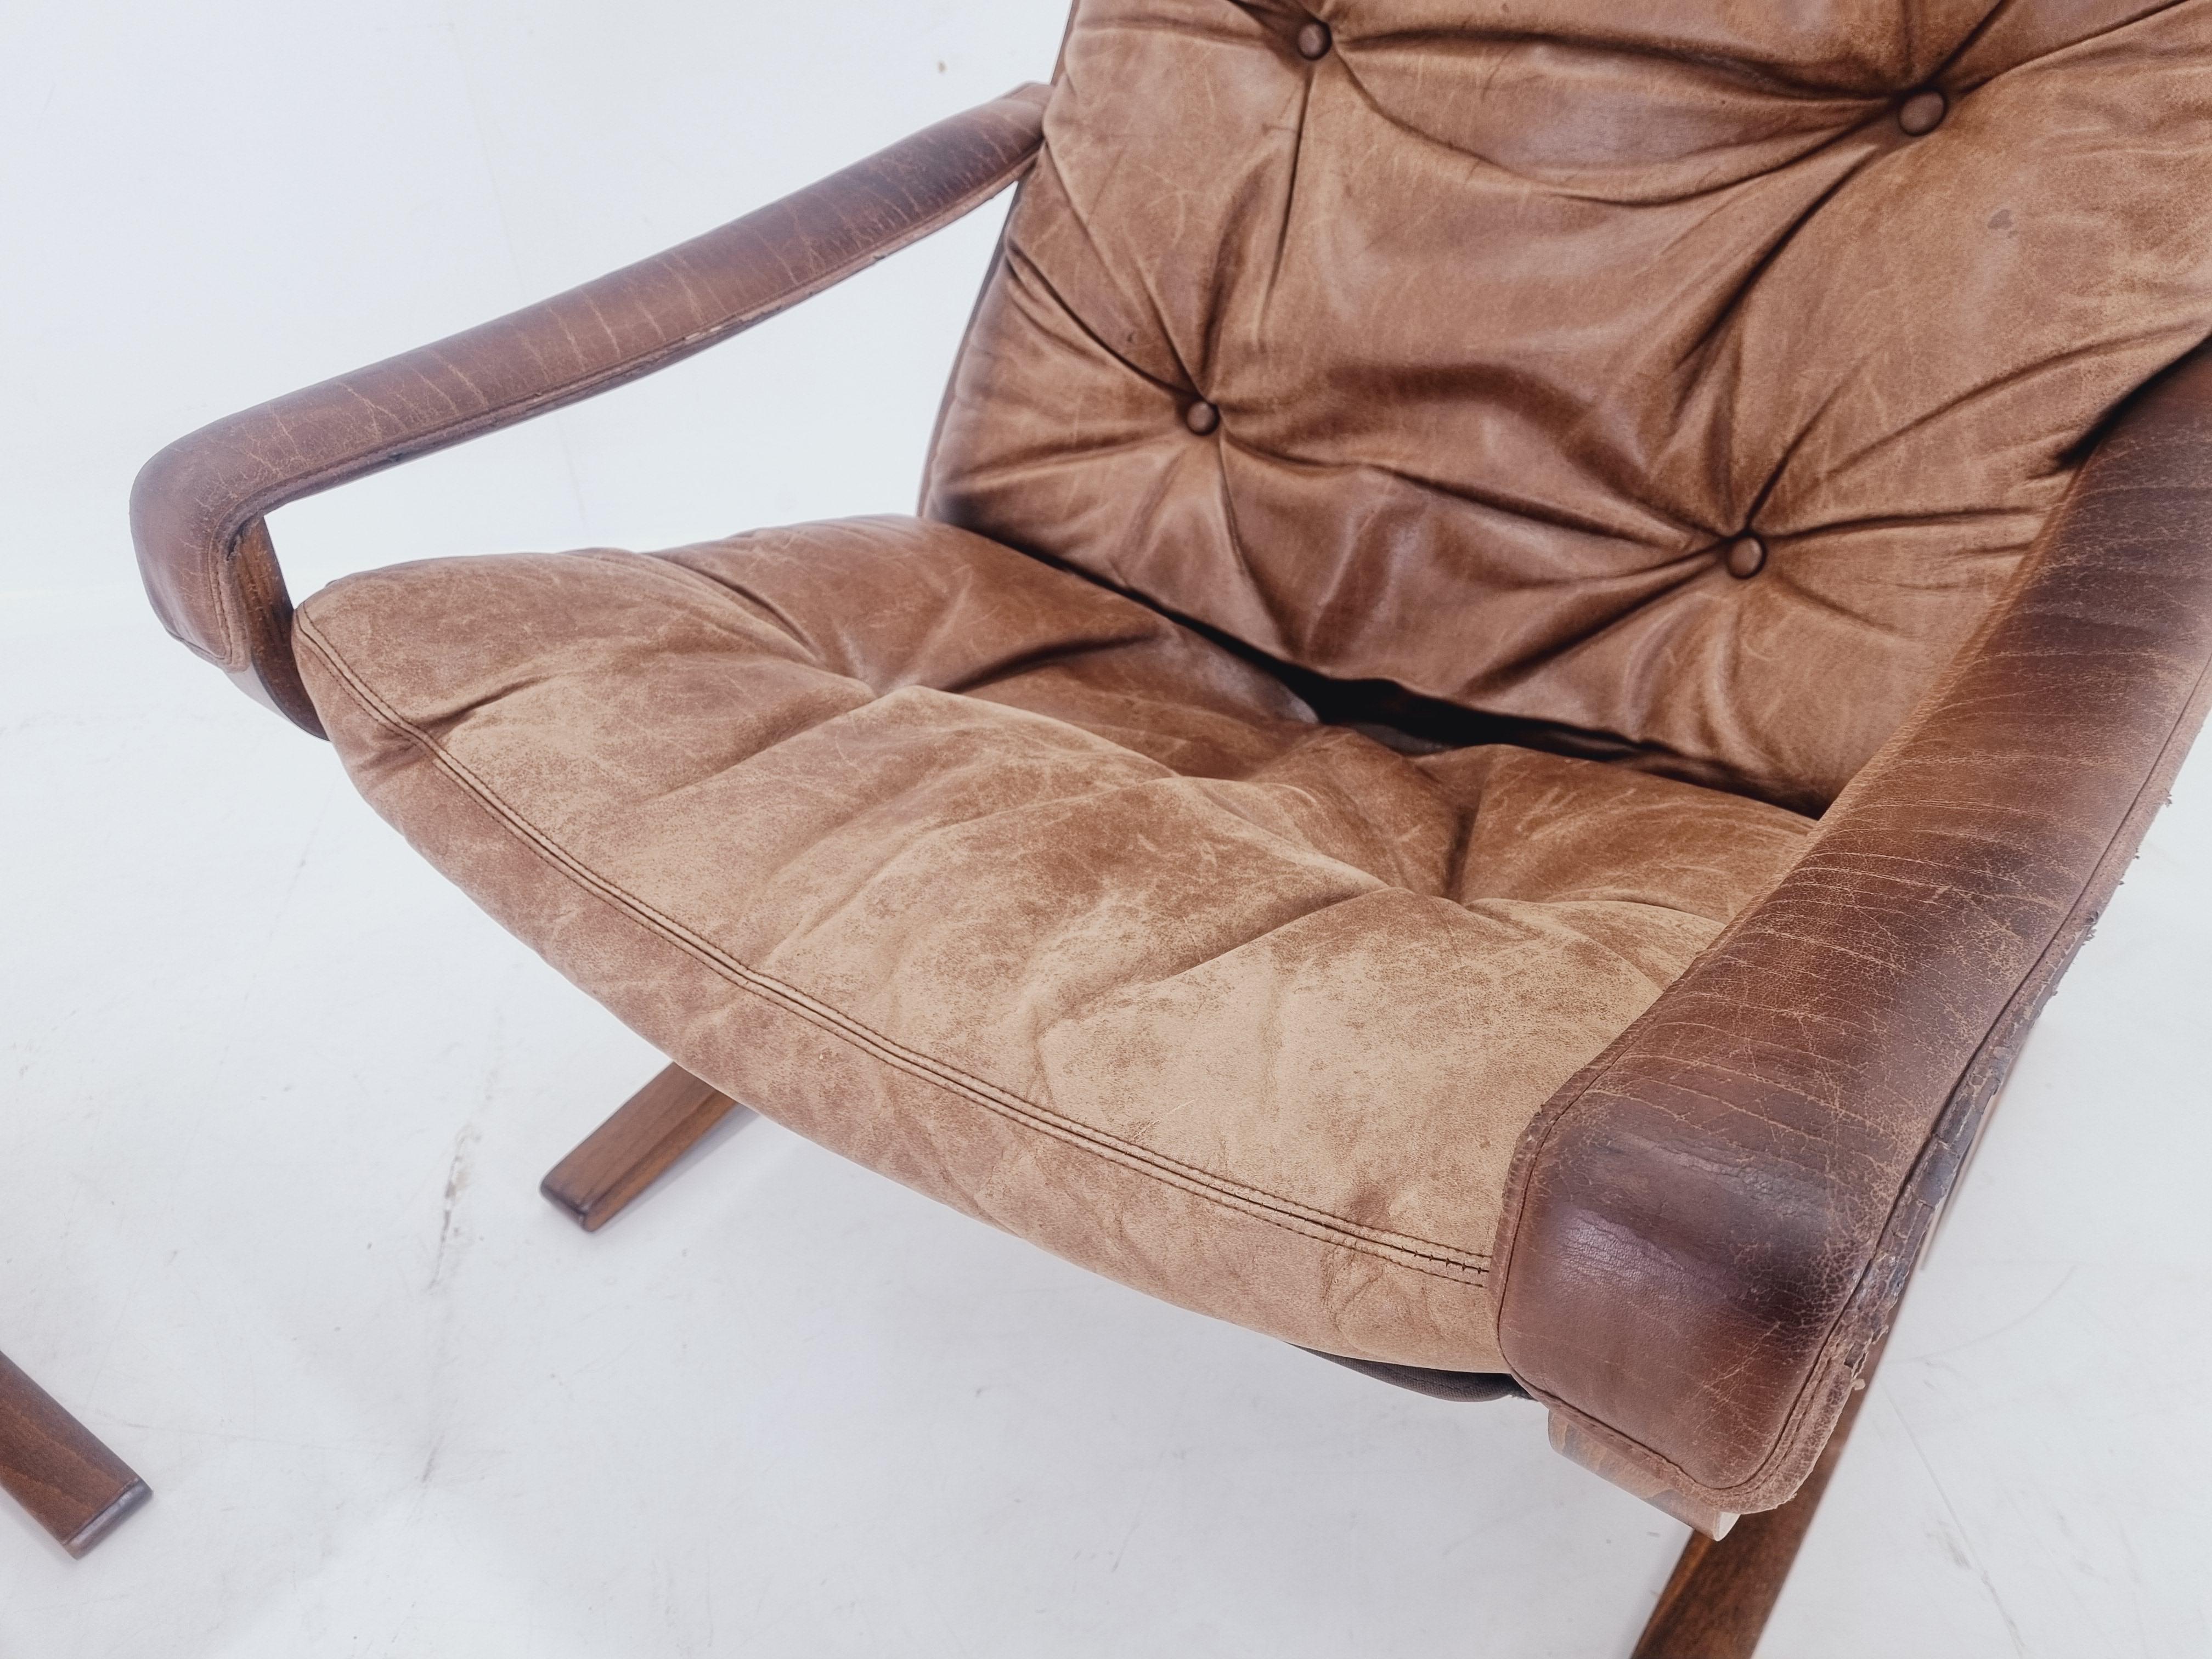 Leather Midcentury Siesta Lounge Armchair and Footstool, Ingmar Relling, Westnofa, 1960s